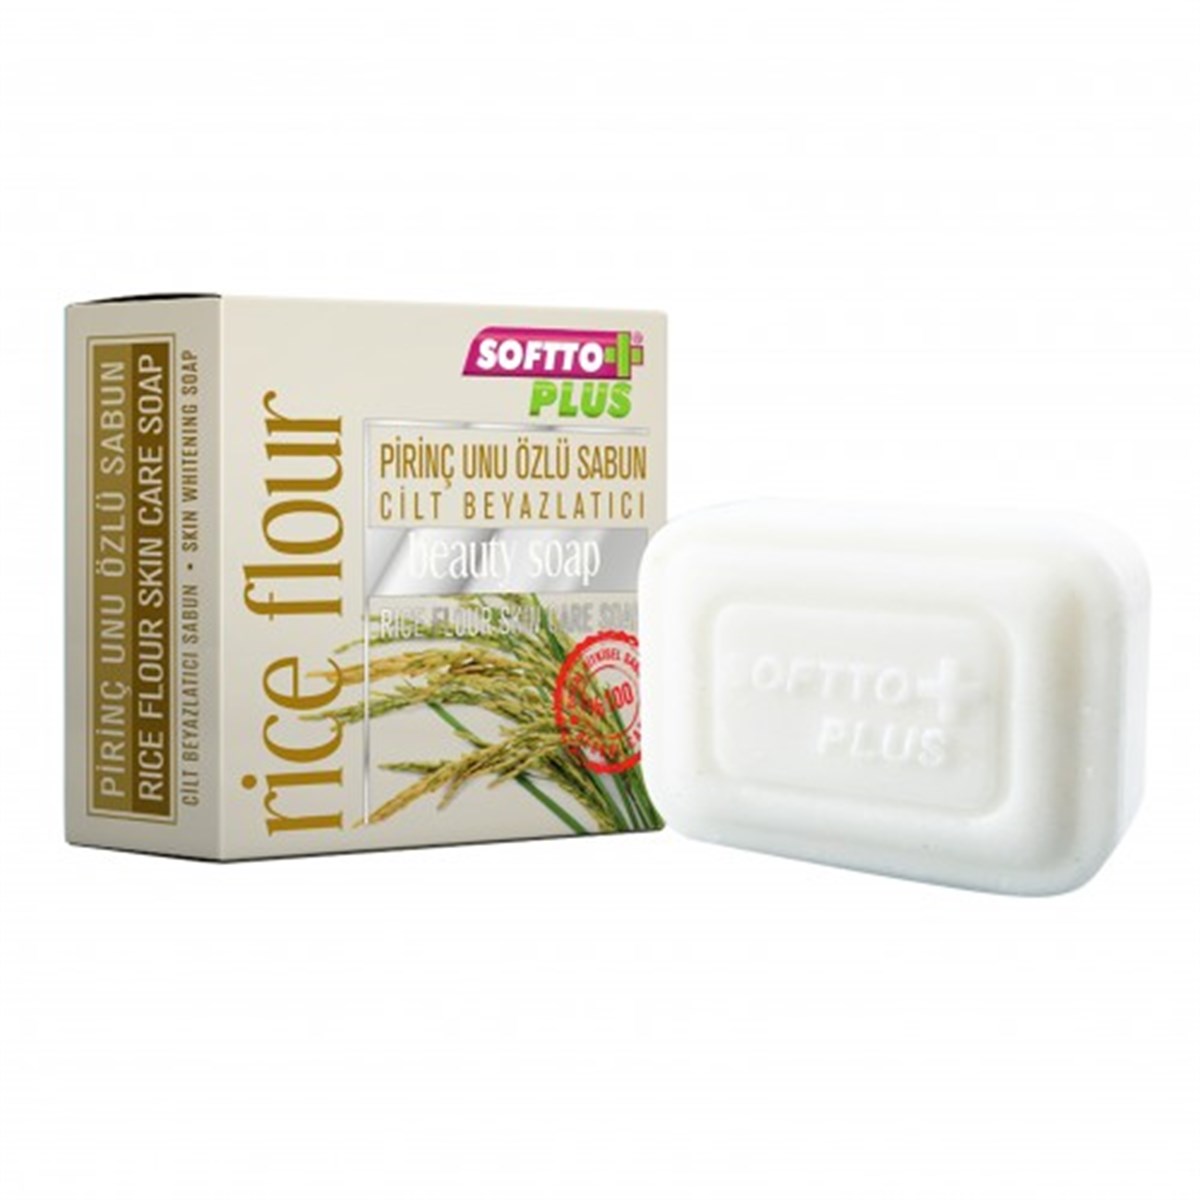 Softto Plus Pirinç Özlü Cilt Beyazlatıcı Sabun 100 gr